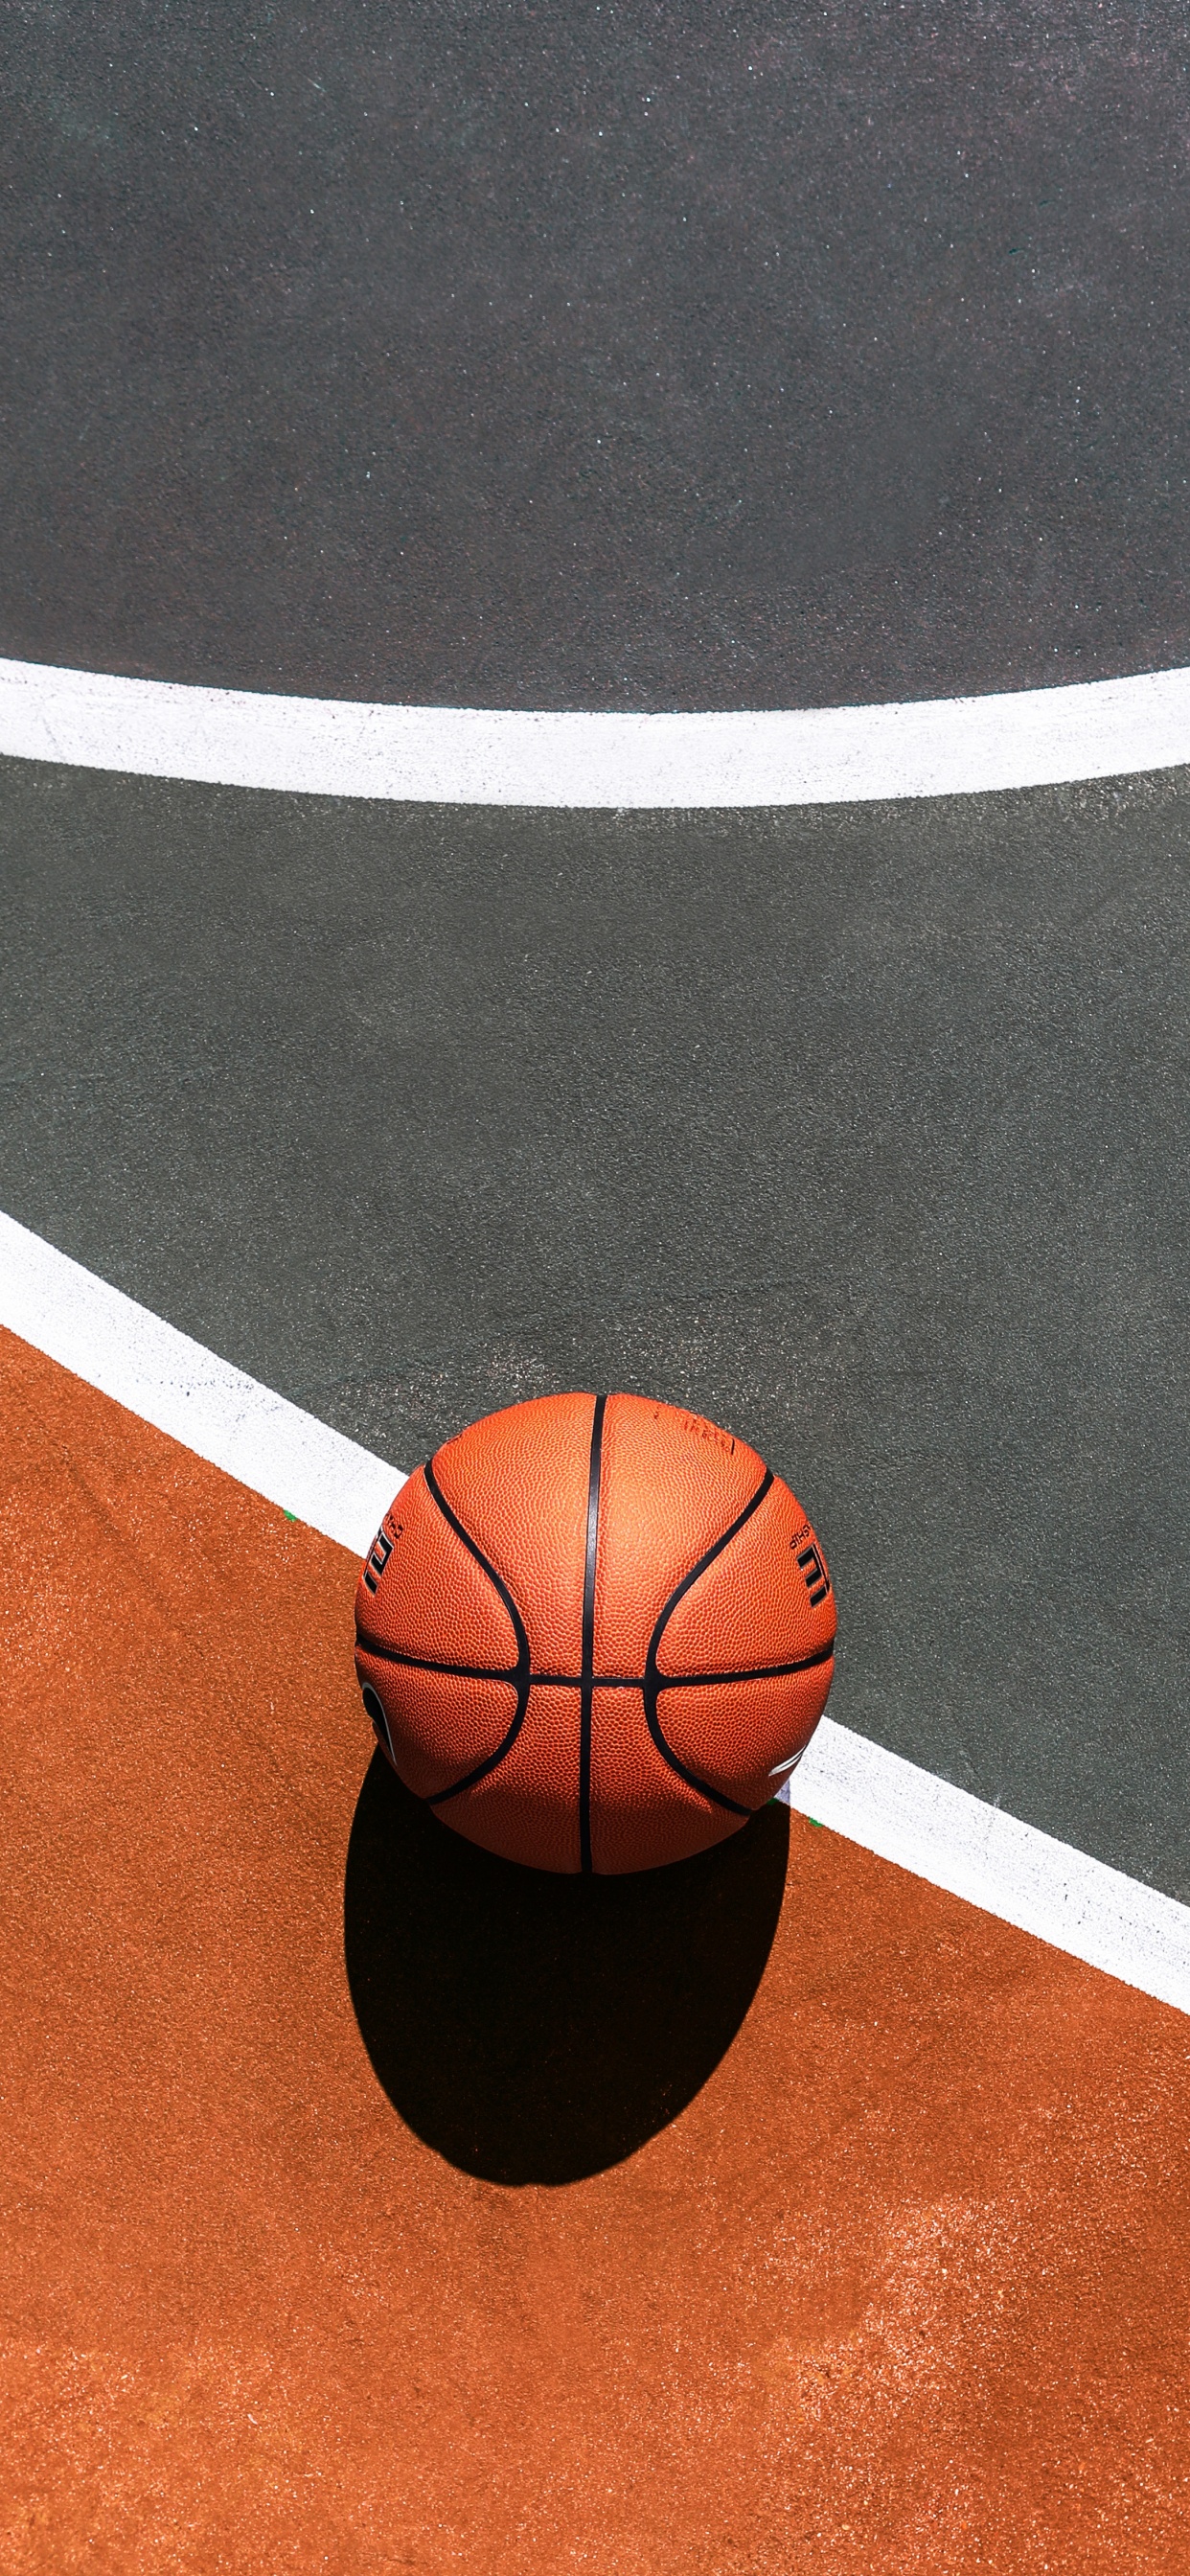 Basket-ball Sur un Terrain de Basket Bleu et Blanc. Wallpaper in 1242x2688 Resolution